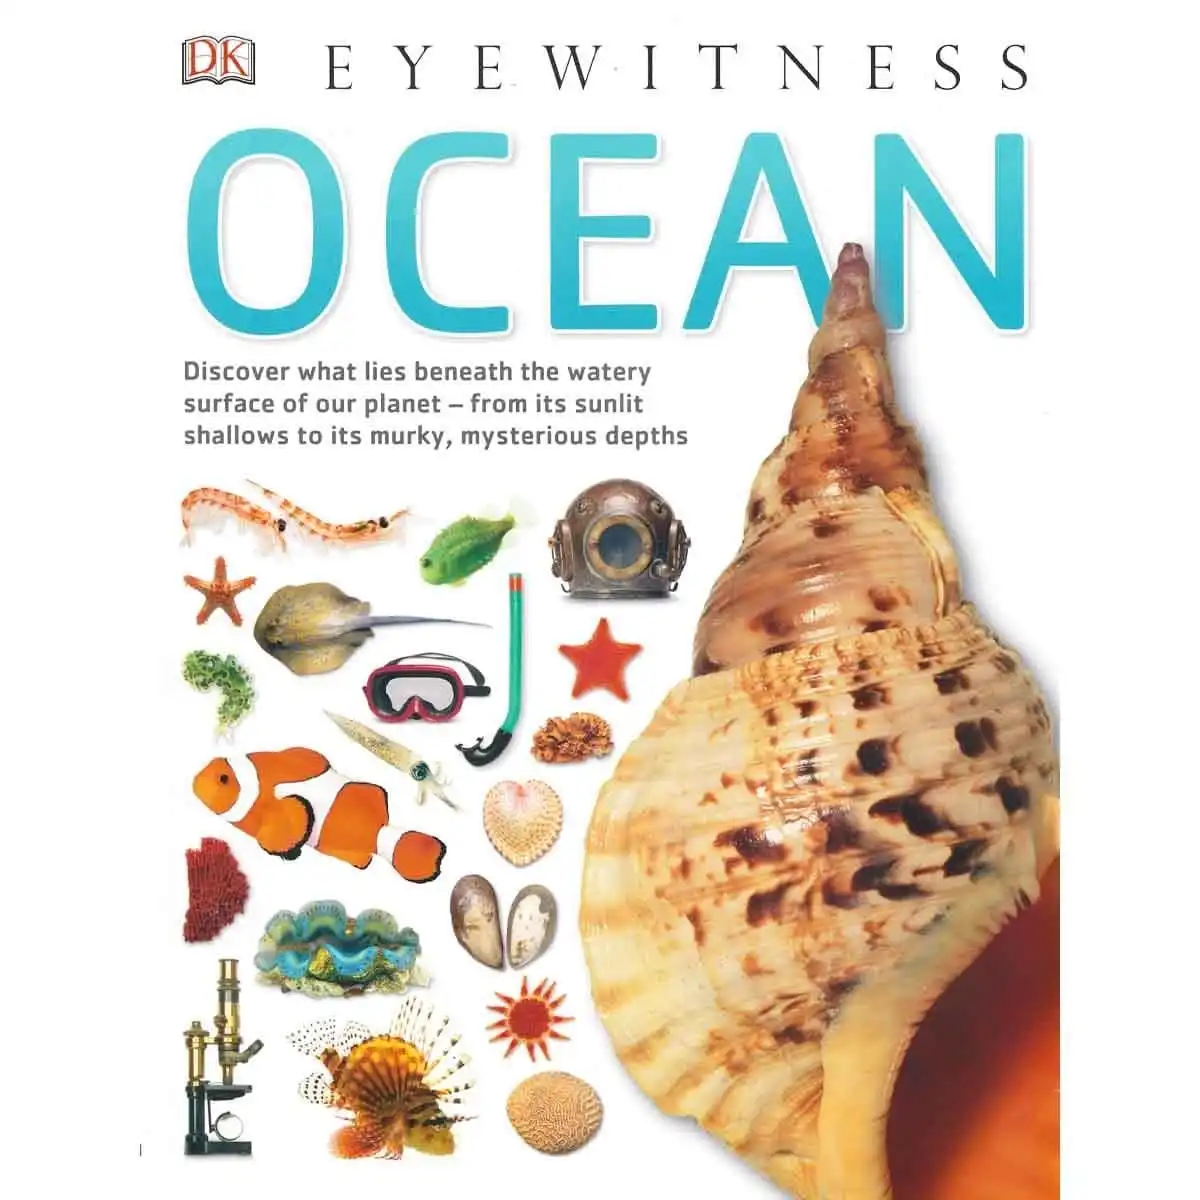 DK Eyewitness - Ocean